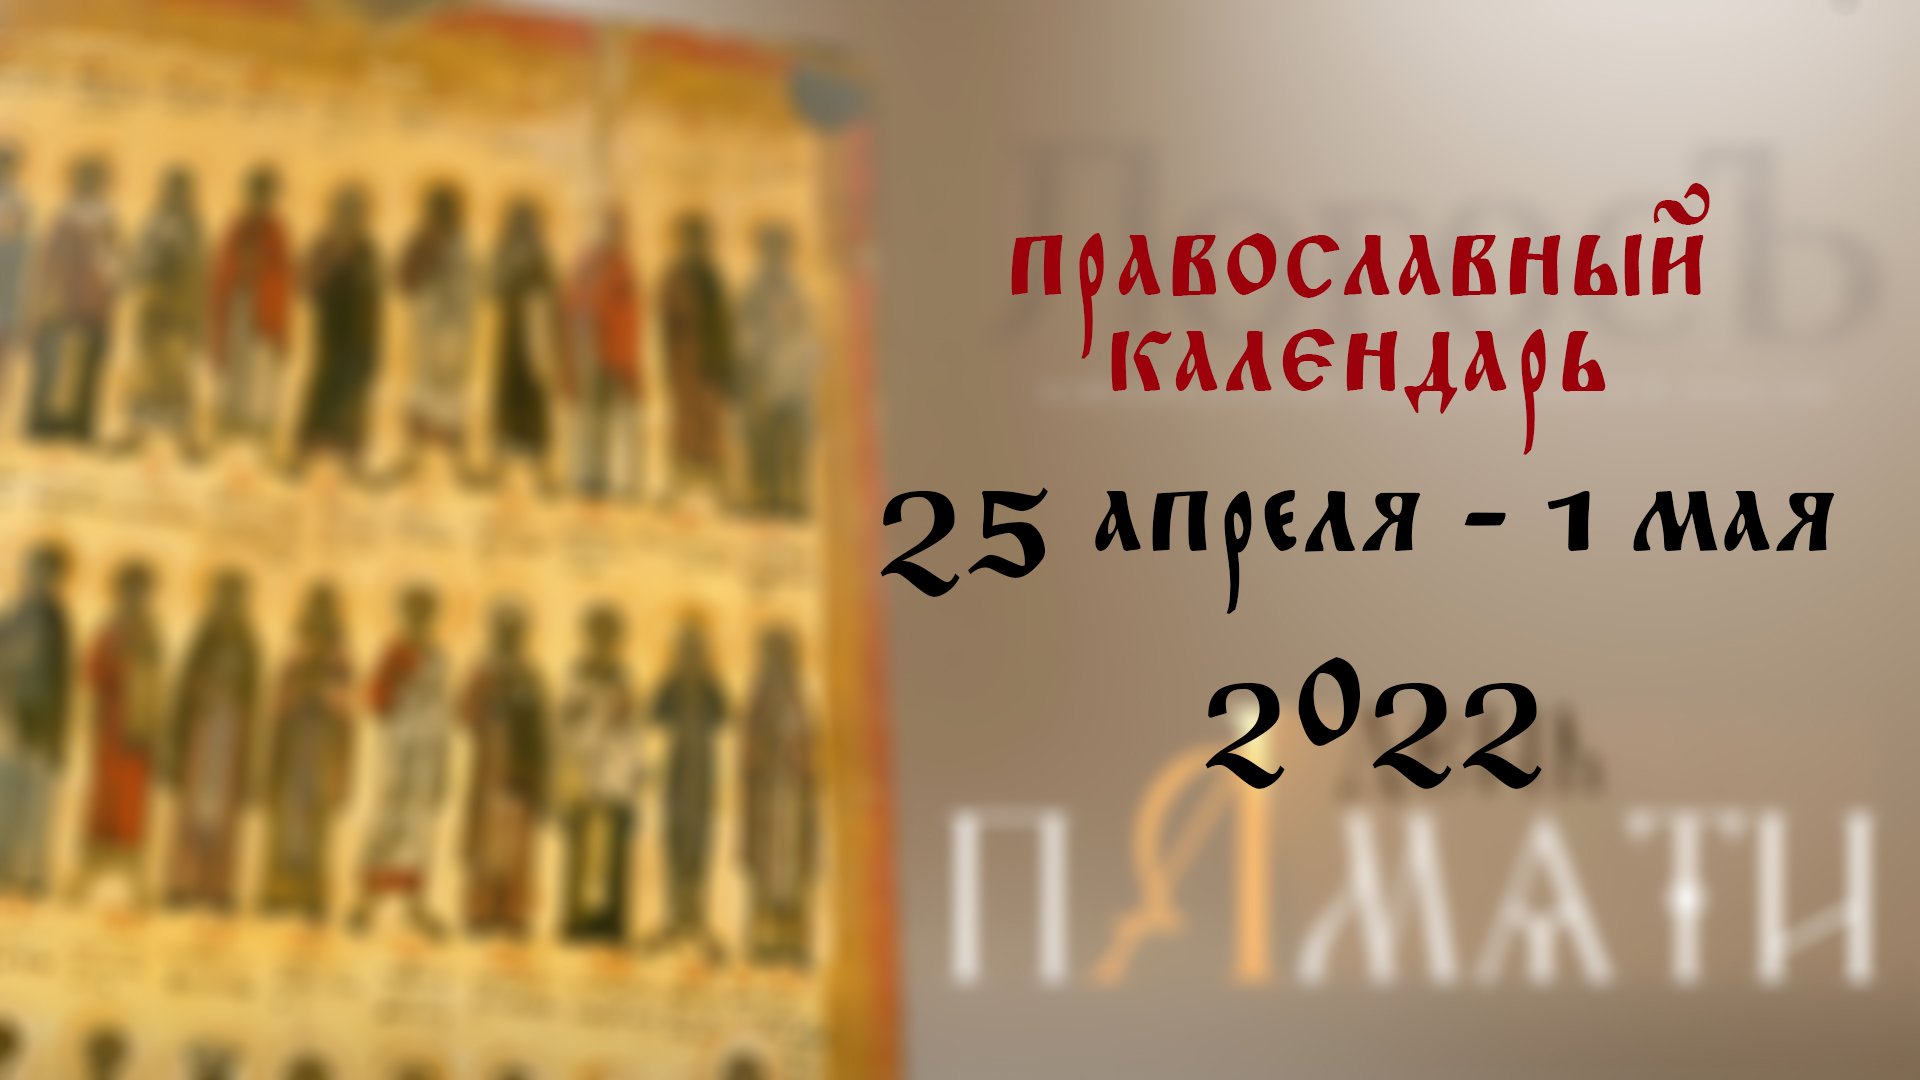 10 апреля 2024 какой праздник православный. С днем памяти святителей московских. С днем 25 июня православный. Большие православные праздники в 2023 году. Православный день 5 апреля.